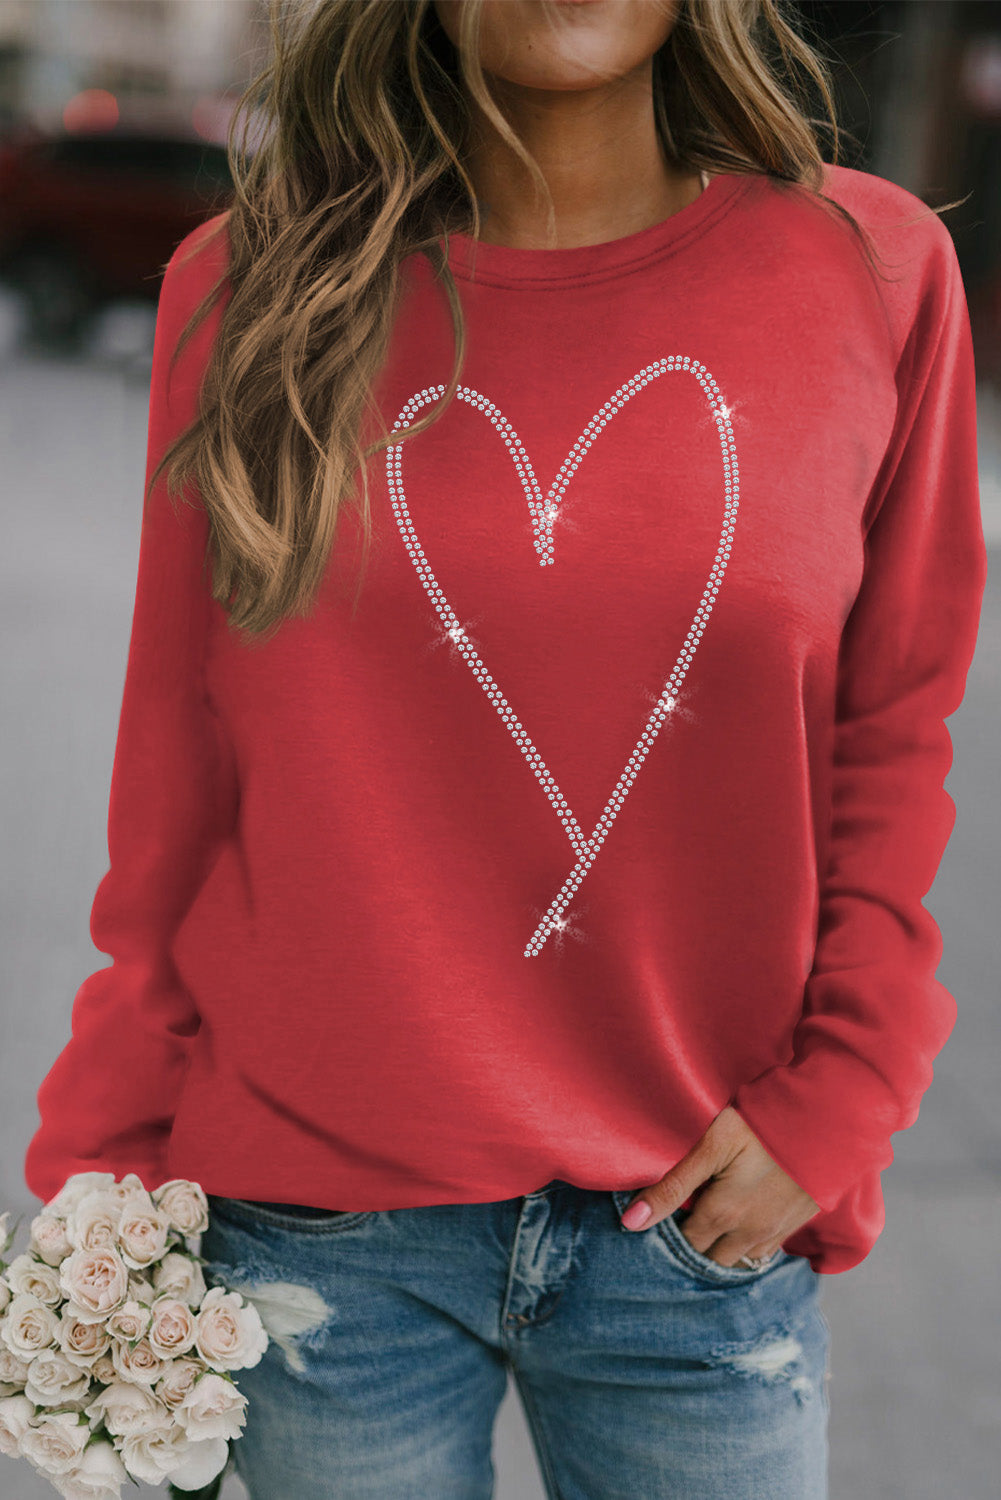 Rhinestone Heart Shaped Graphic Sweatshirt